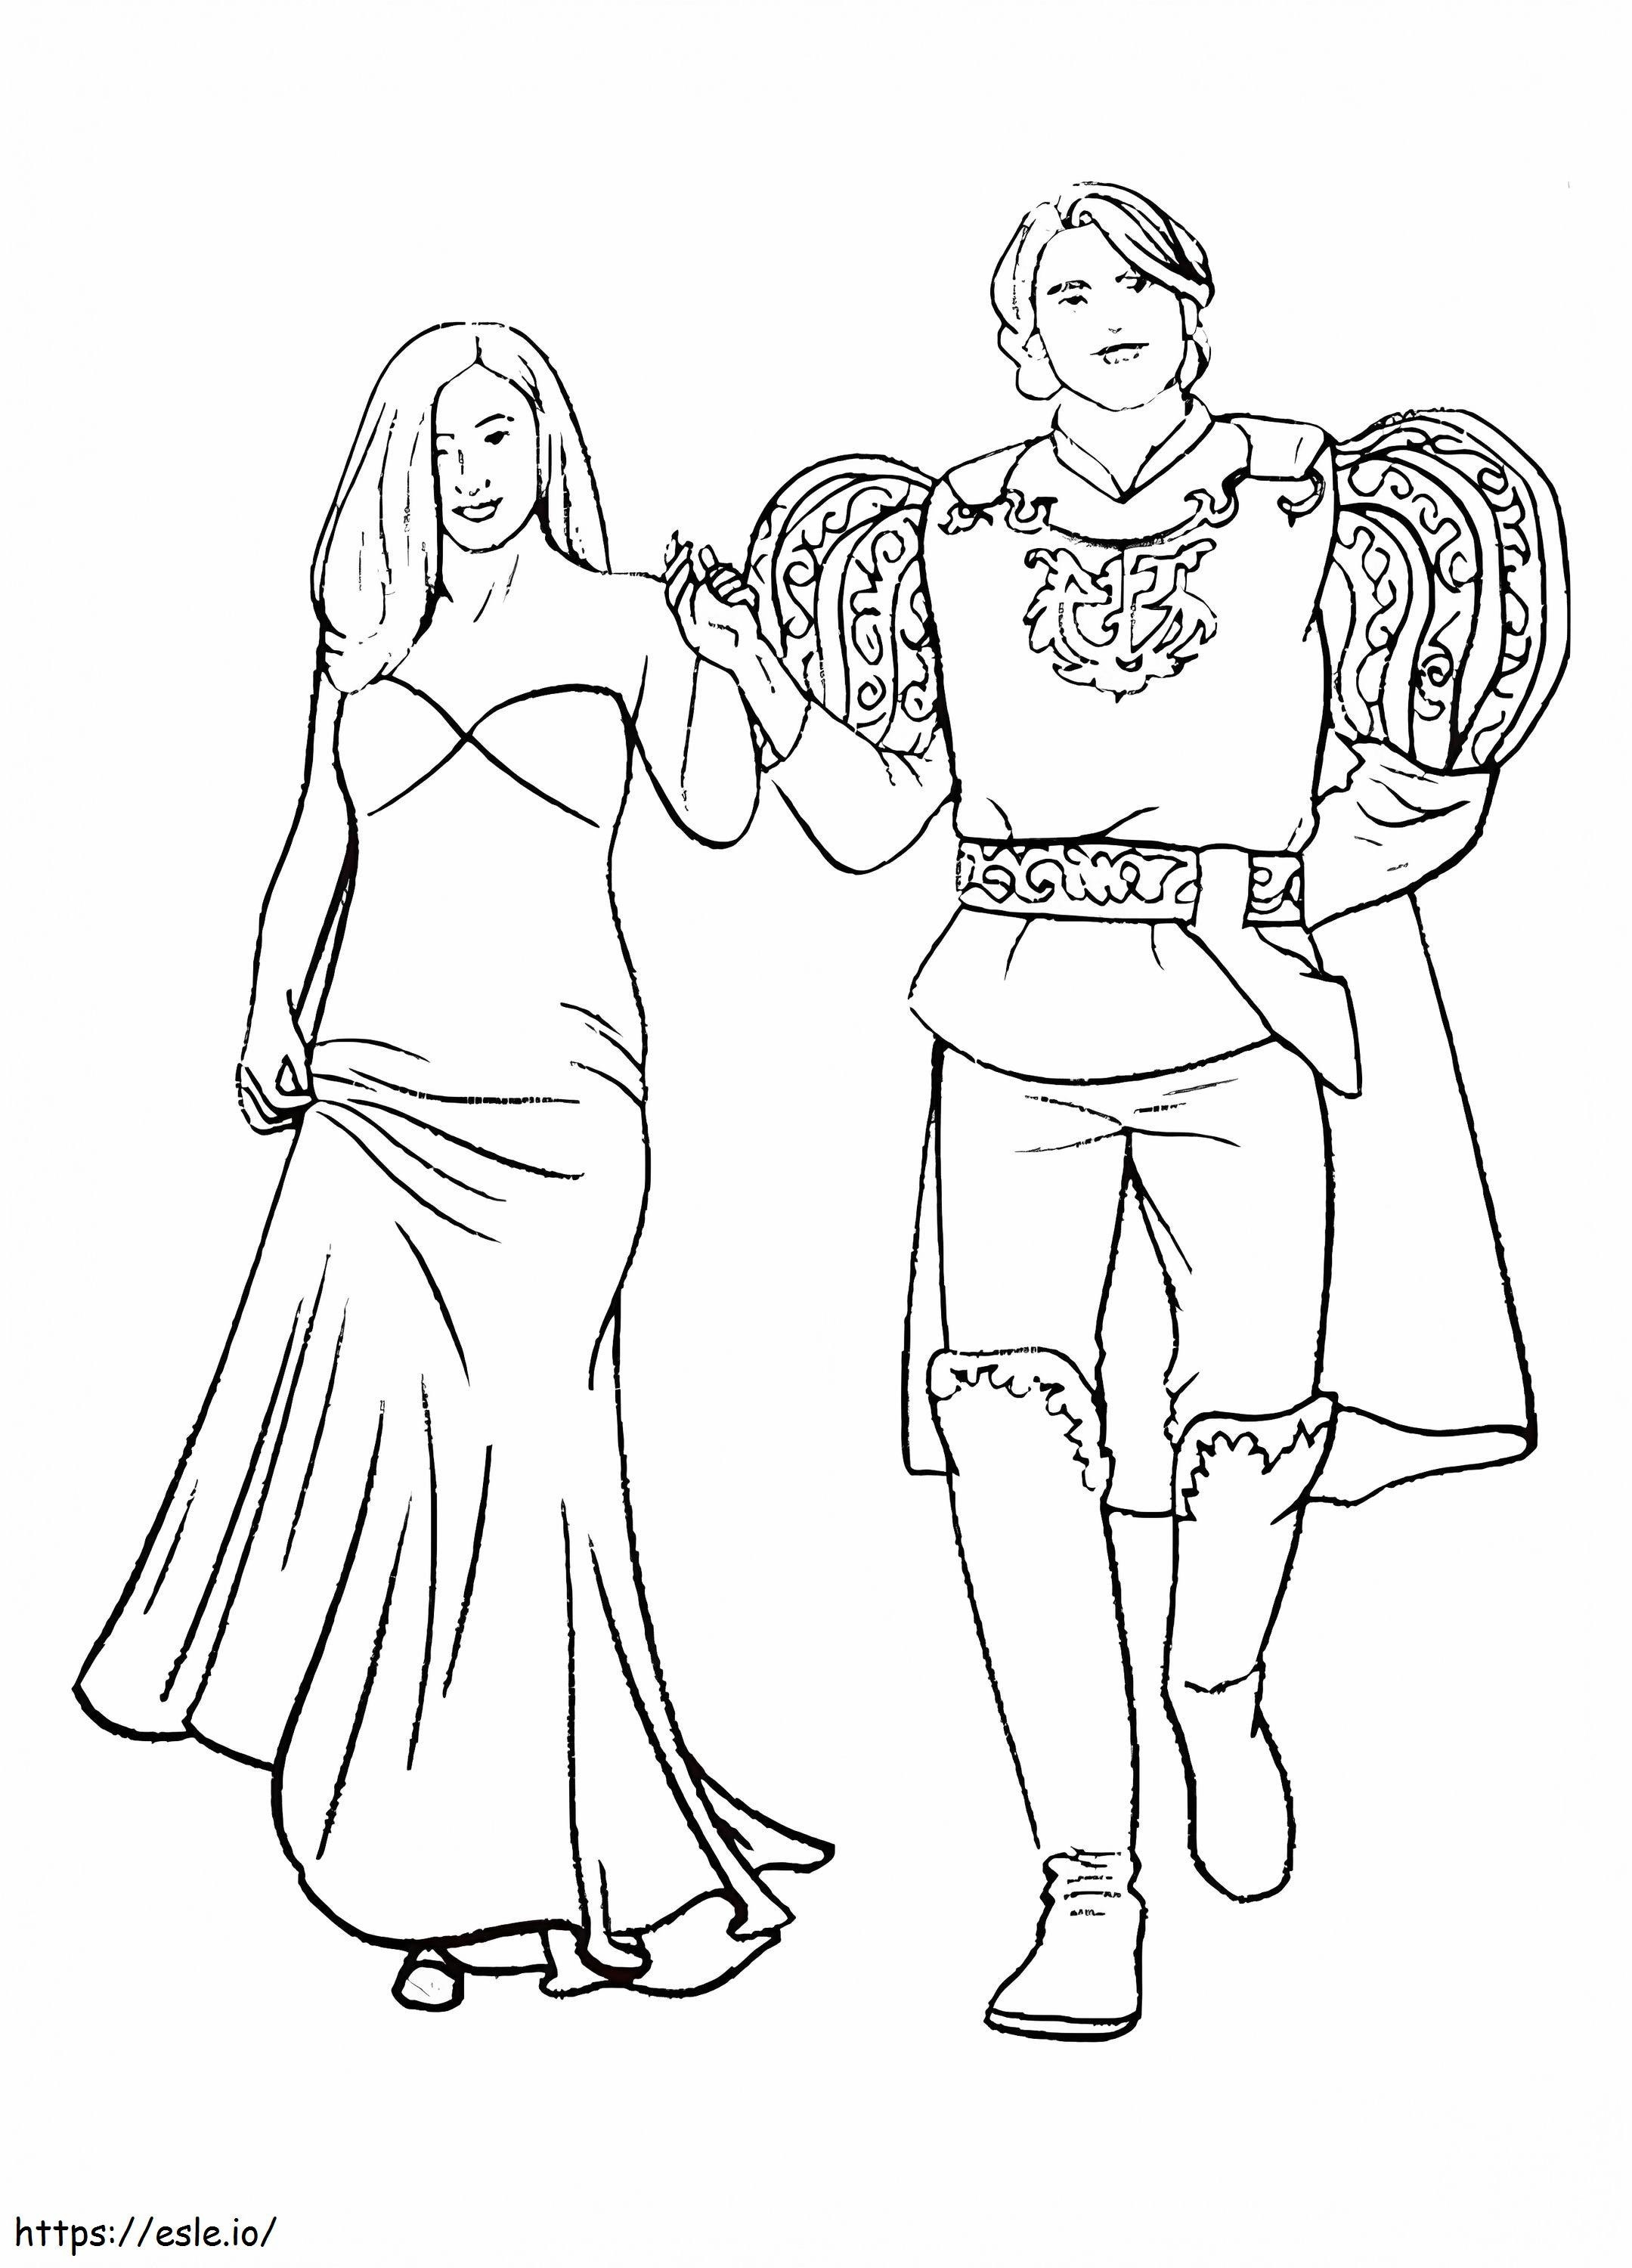 Prince i Giselle kolorowanka